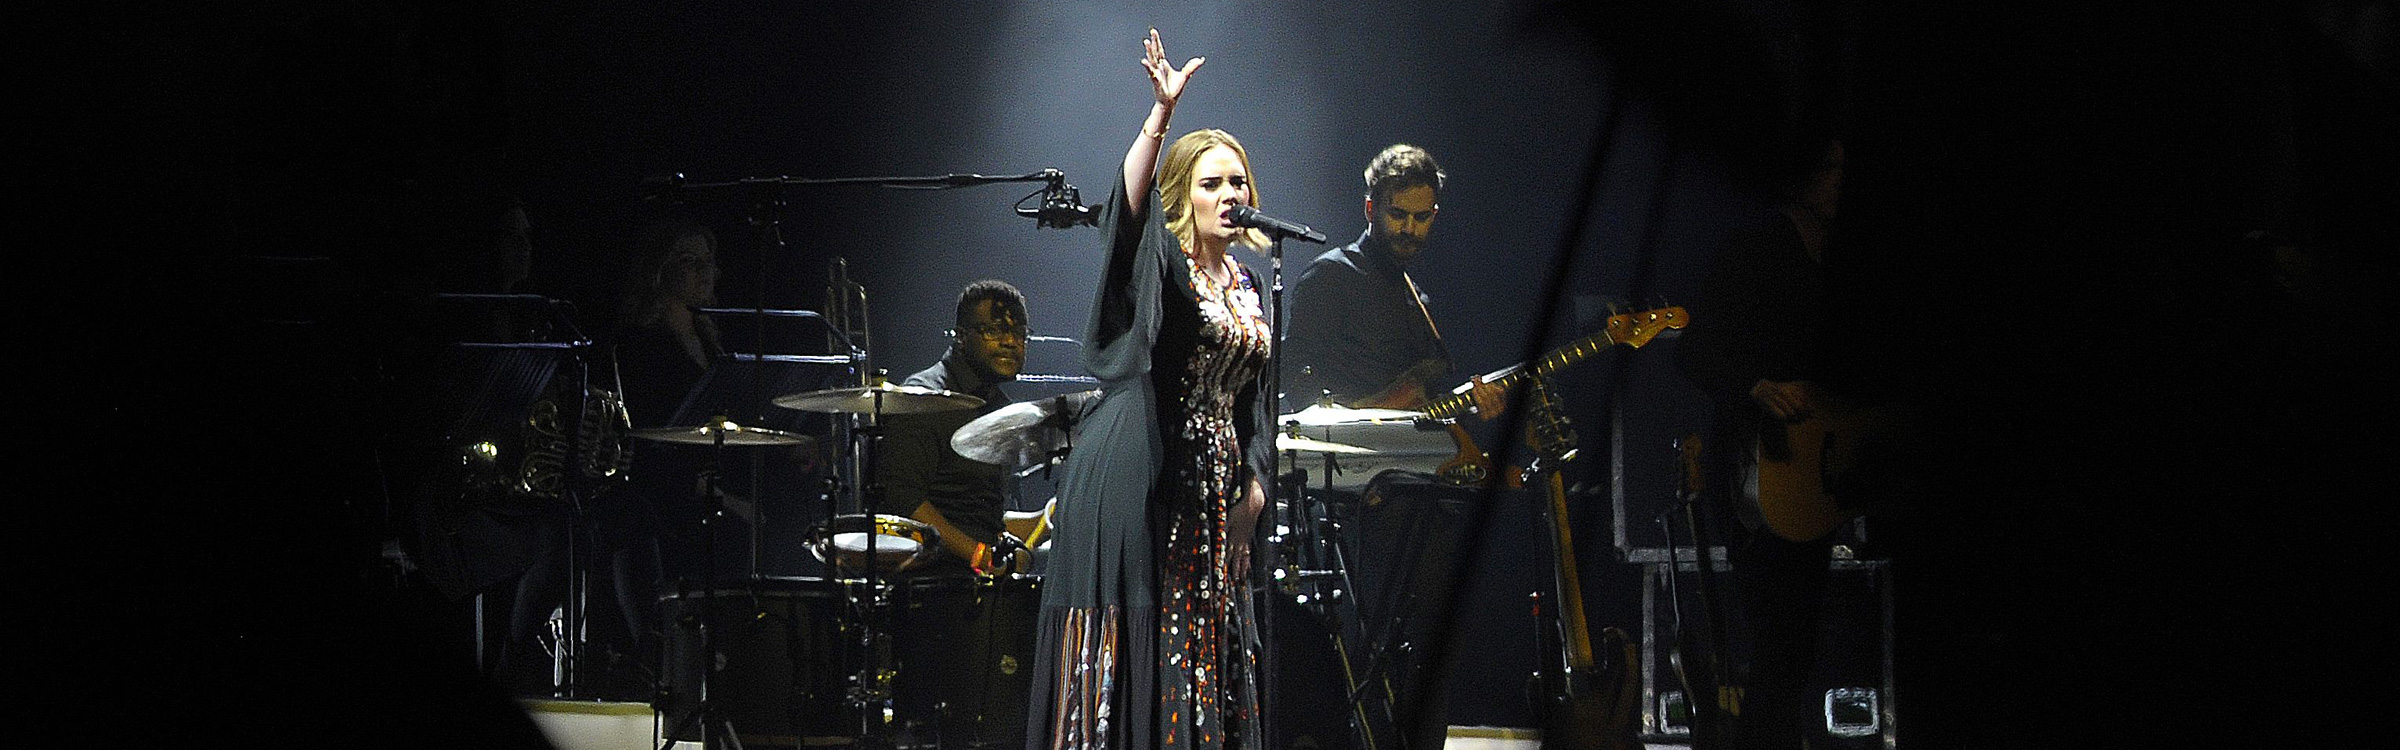 Adele header